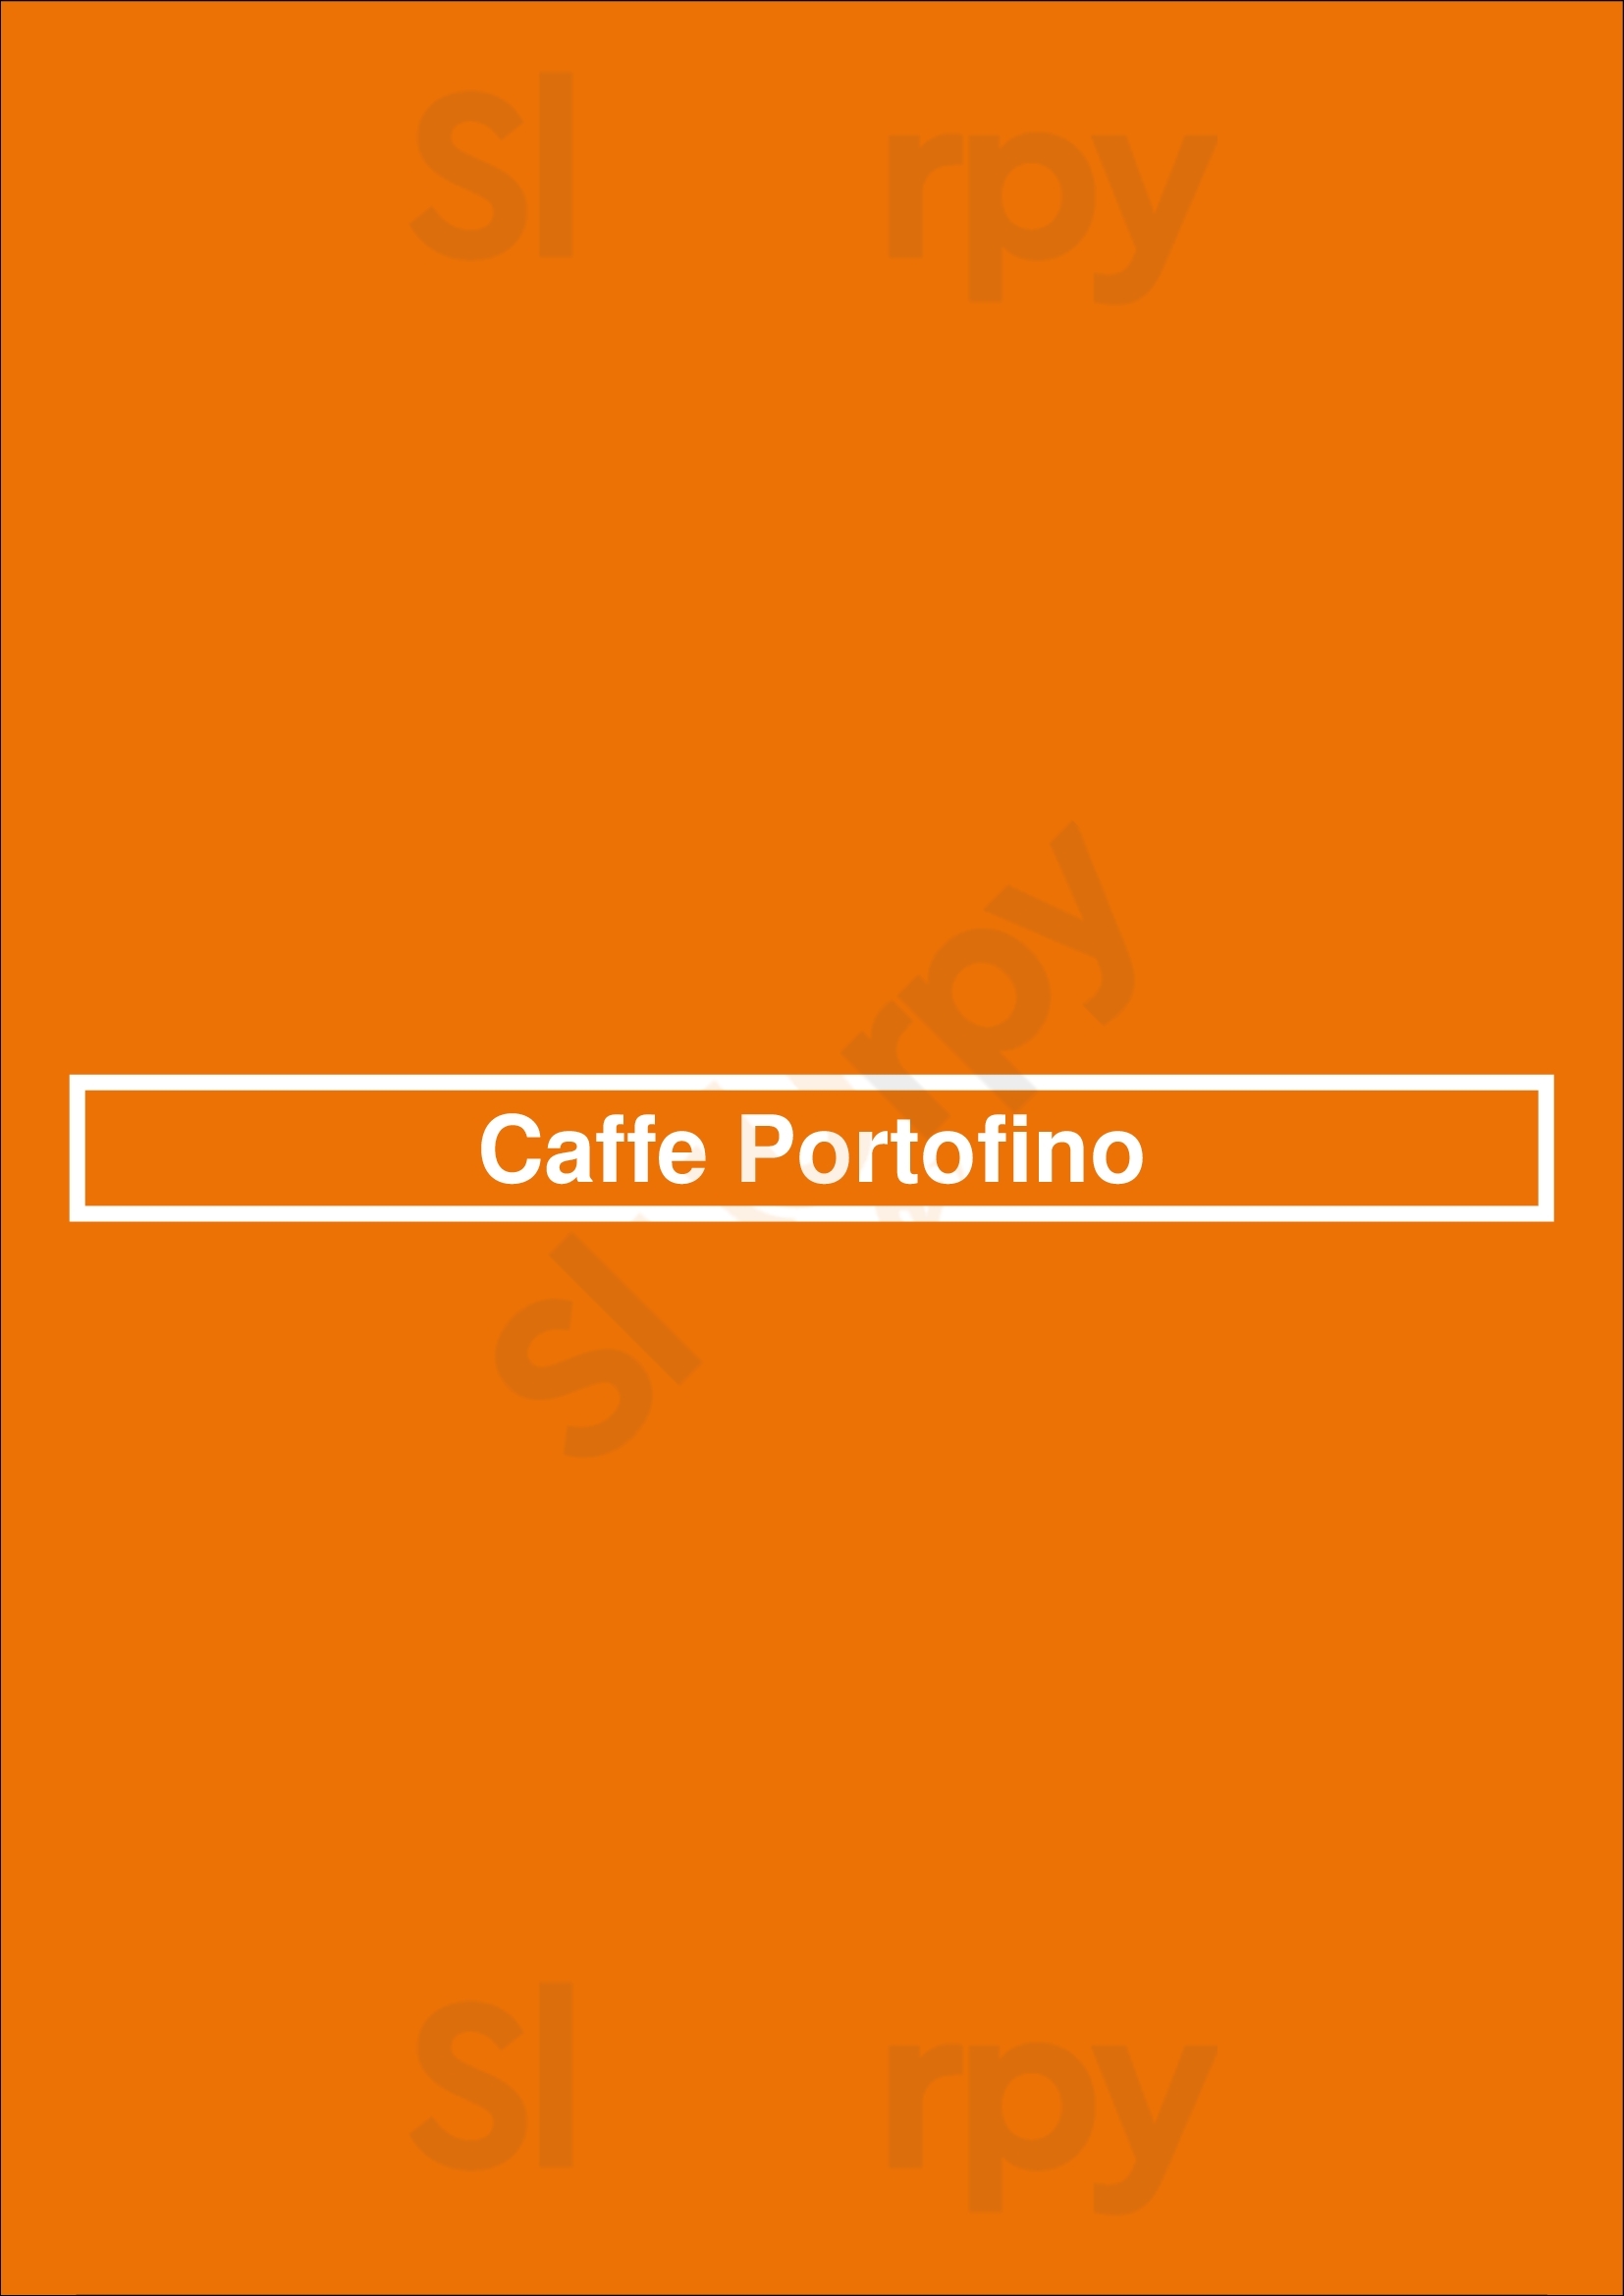 Caffe Portofino Miami Menu - 1